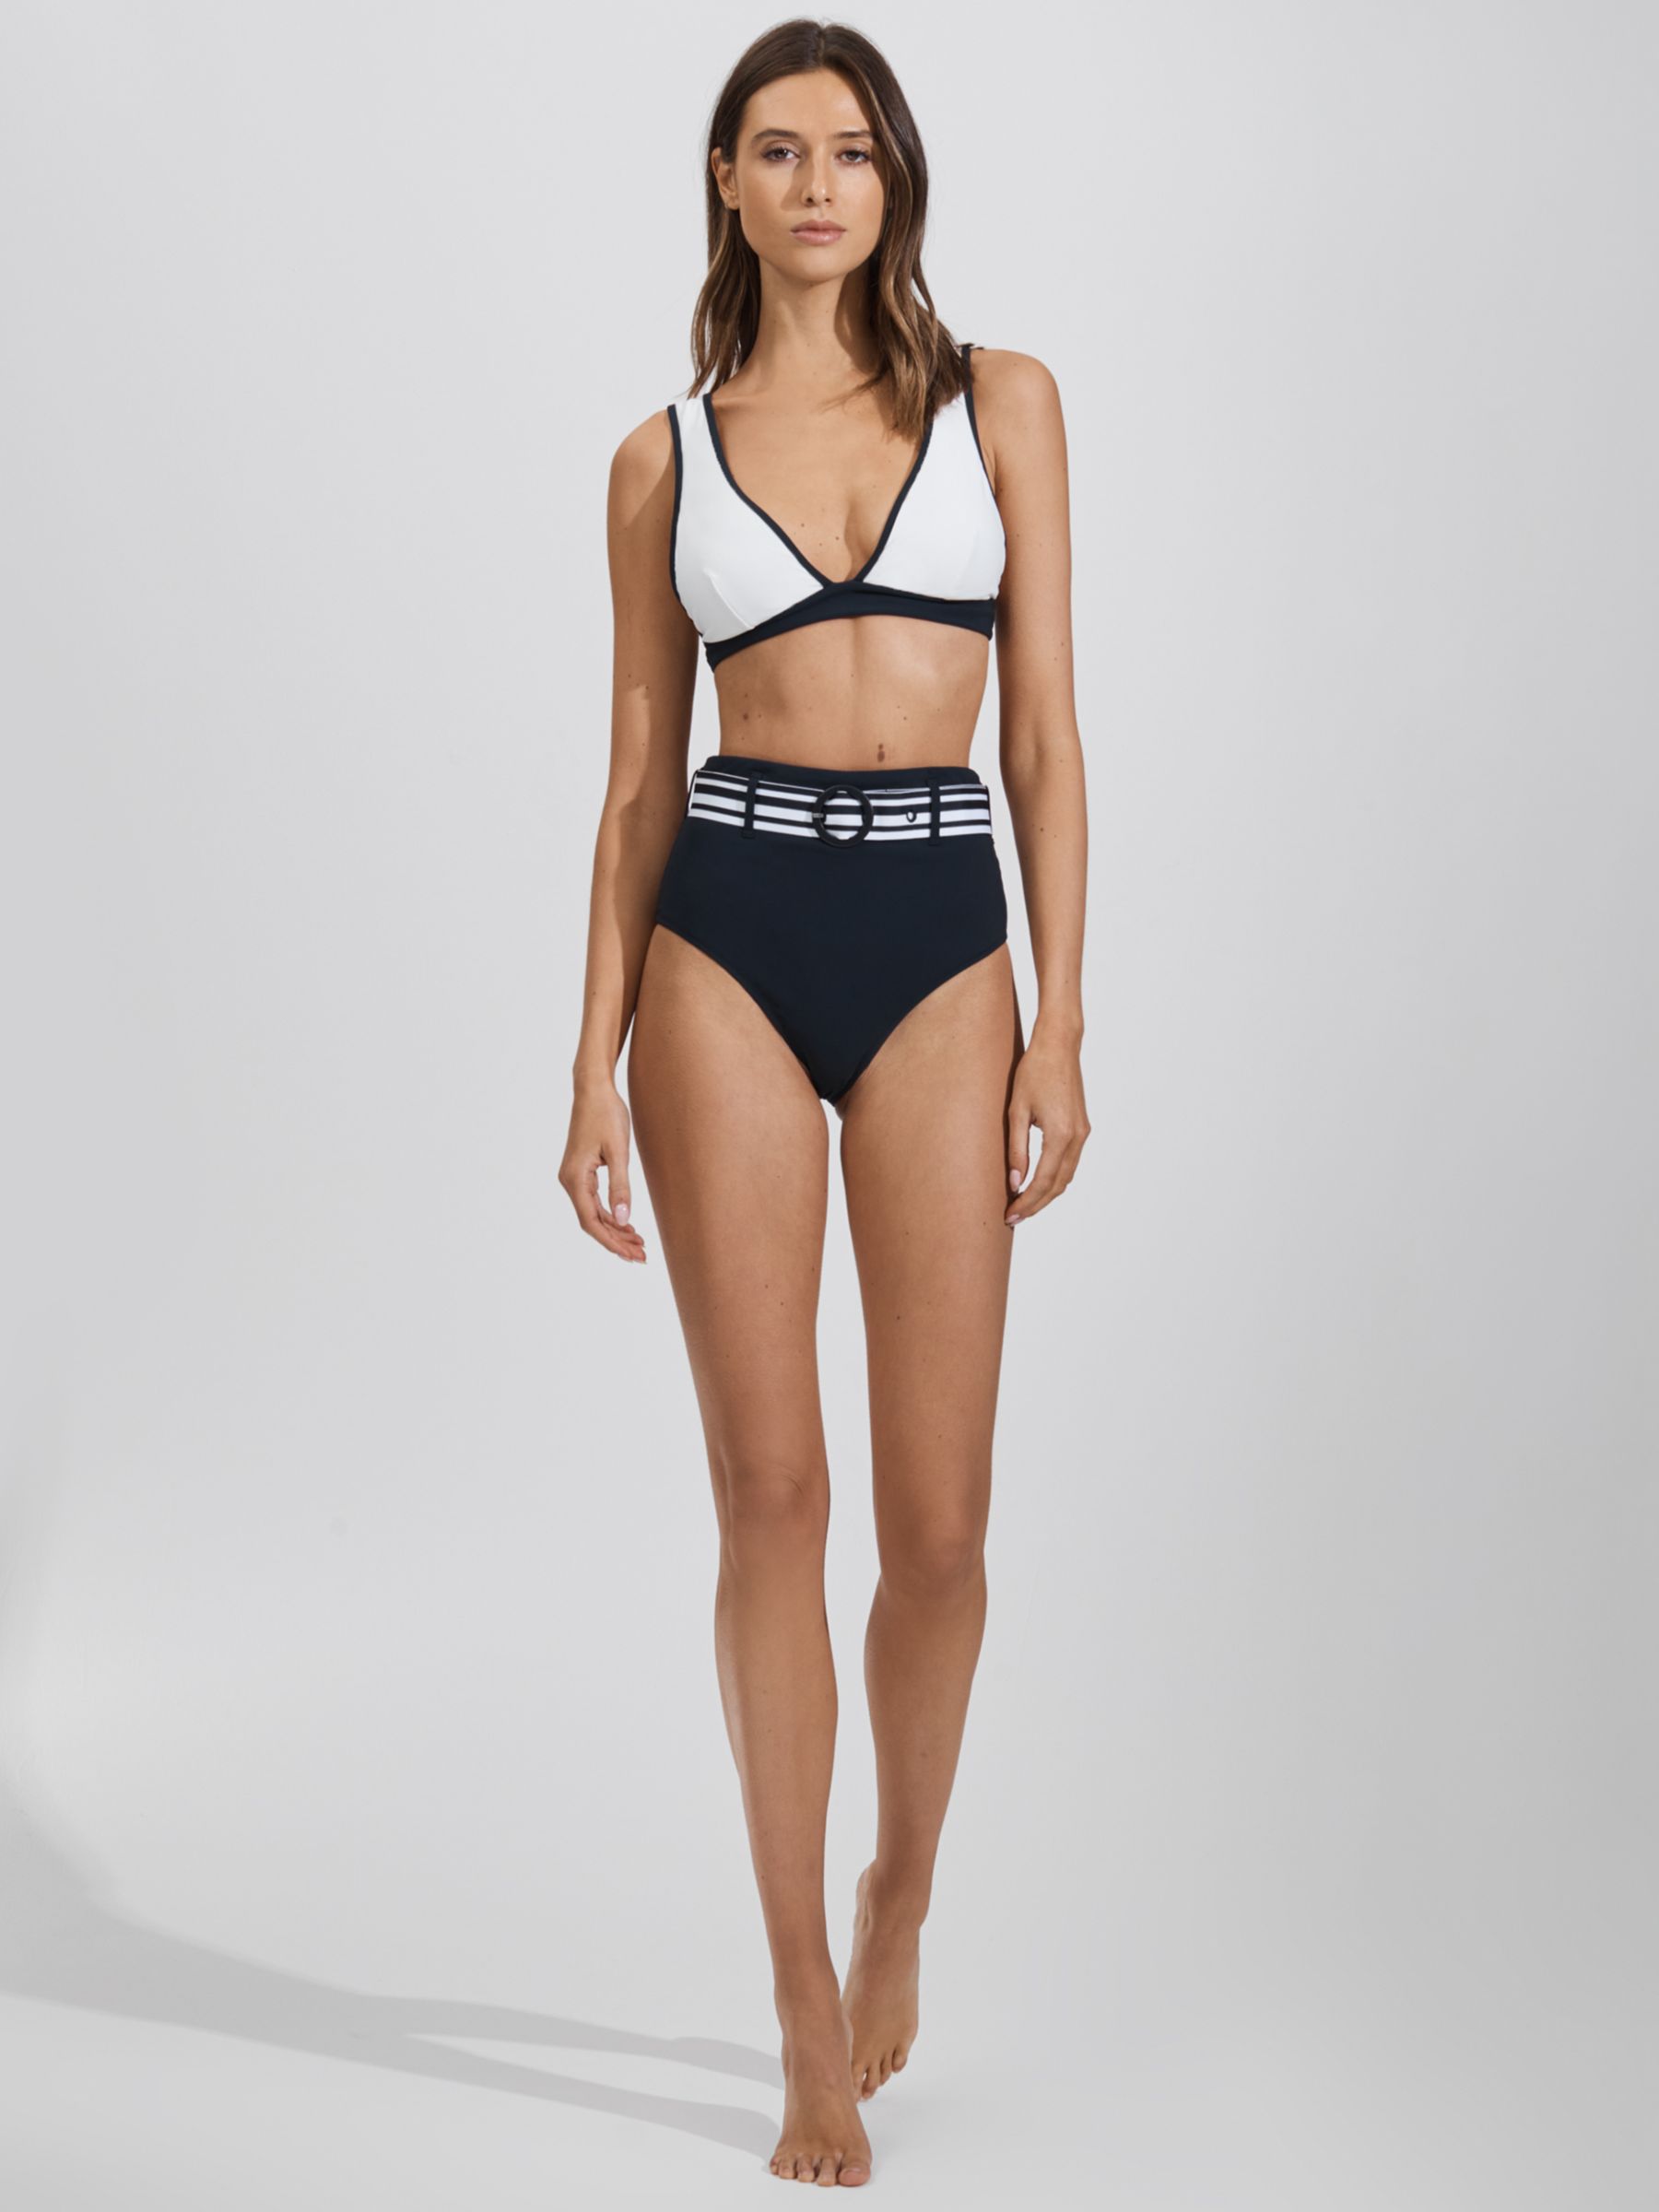 Reiss Jessica Contrast Trim Bikini Top, White/Navy, 6